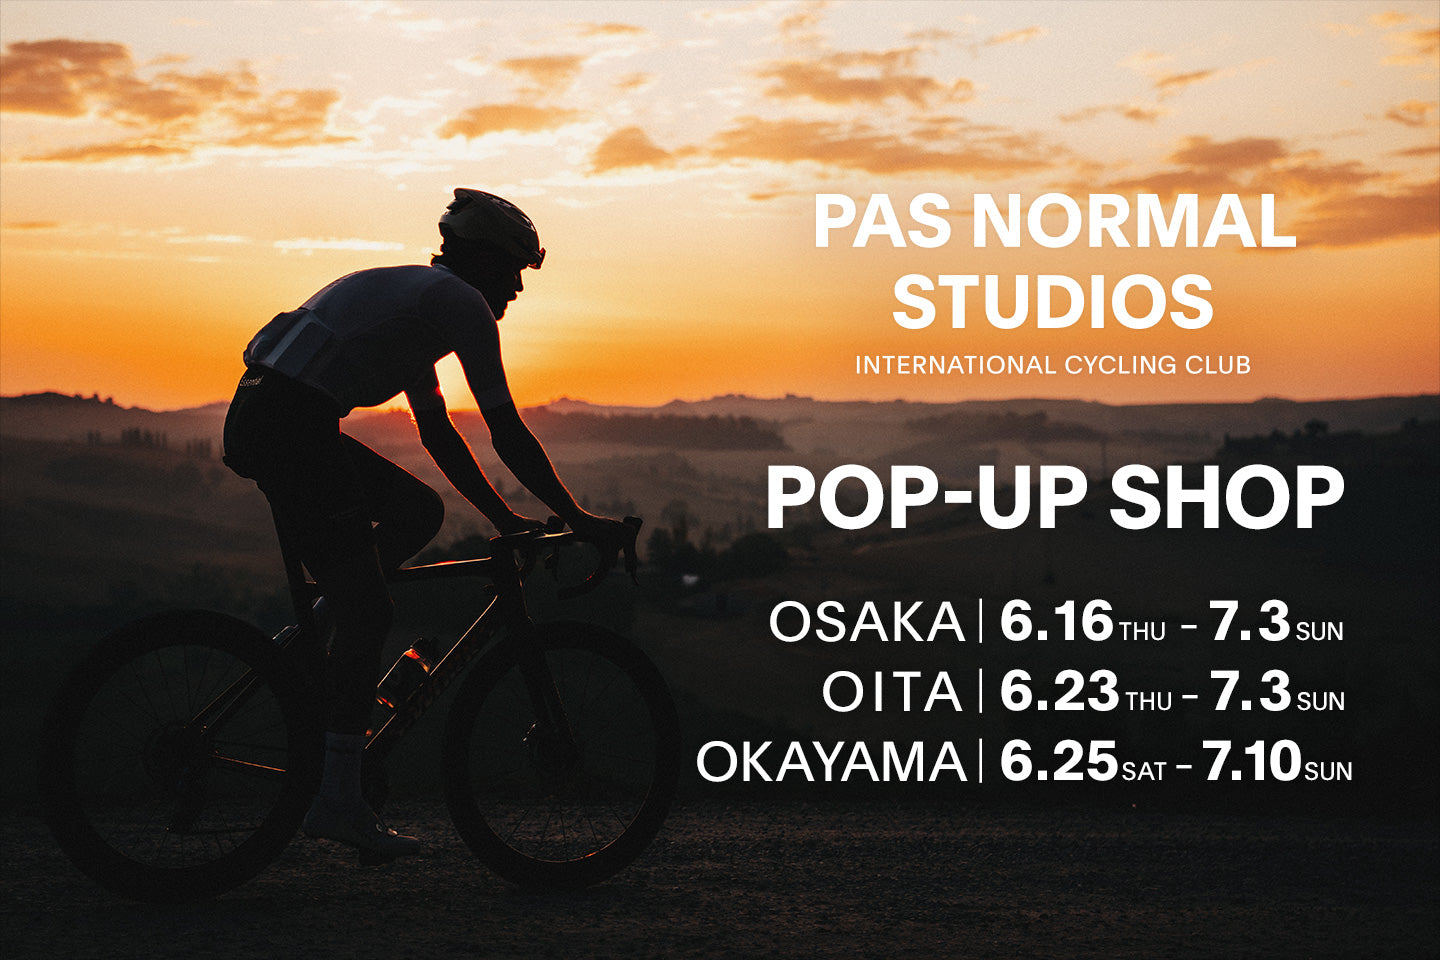 大阪、大分と岡山でPas Normal Studiosポップアップショップ開催